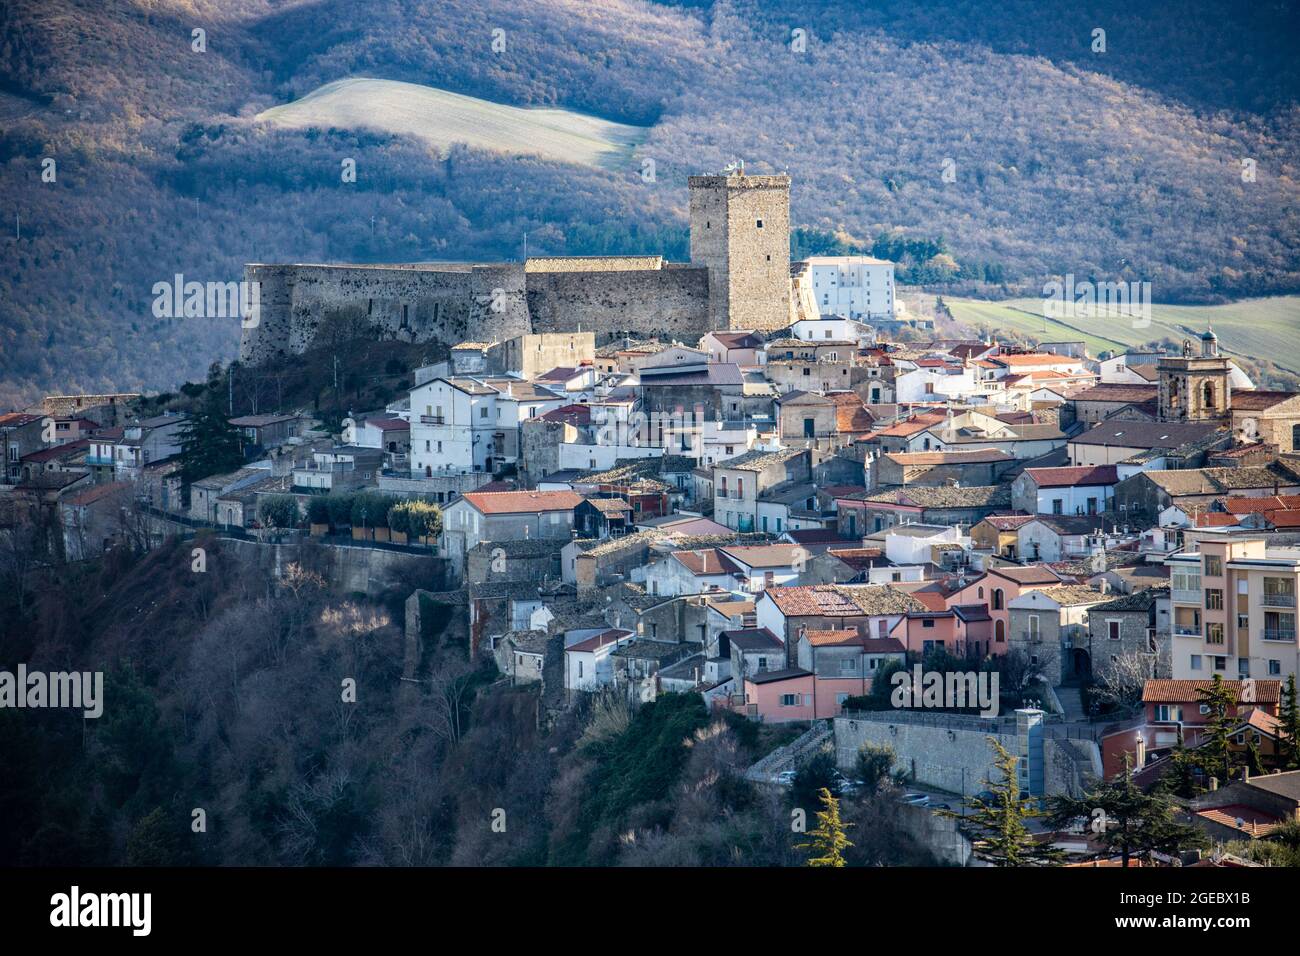 Castello di Deliceto, Deliceto, province of Foggia, italy Stock Photo